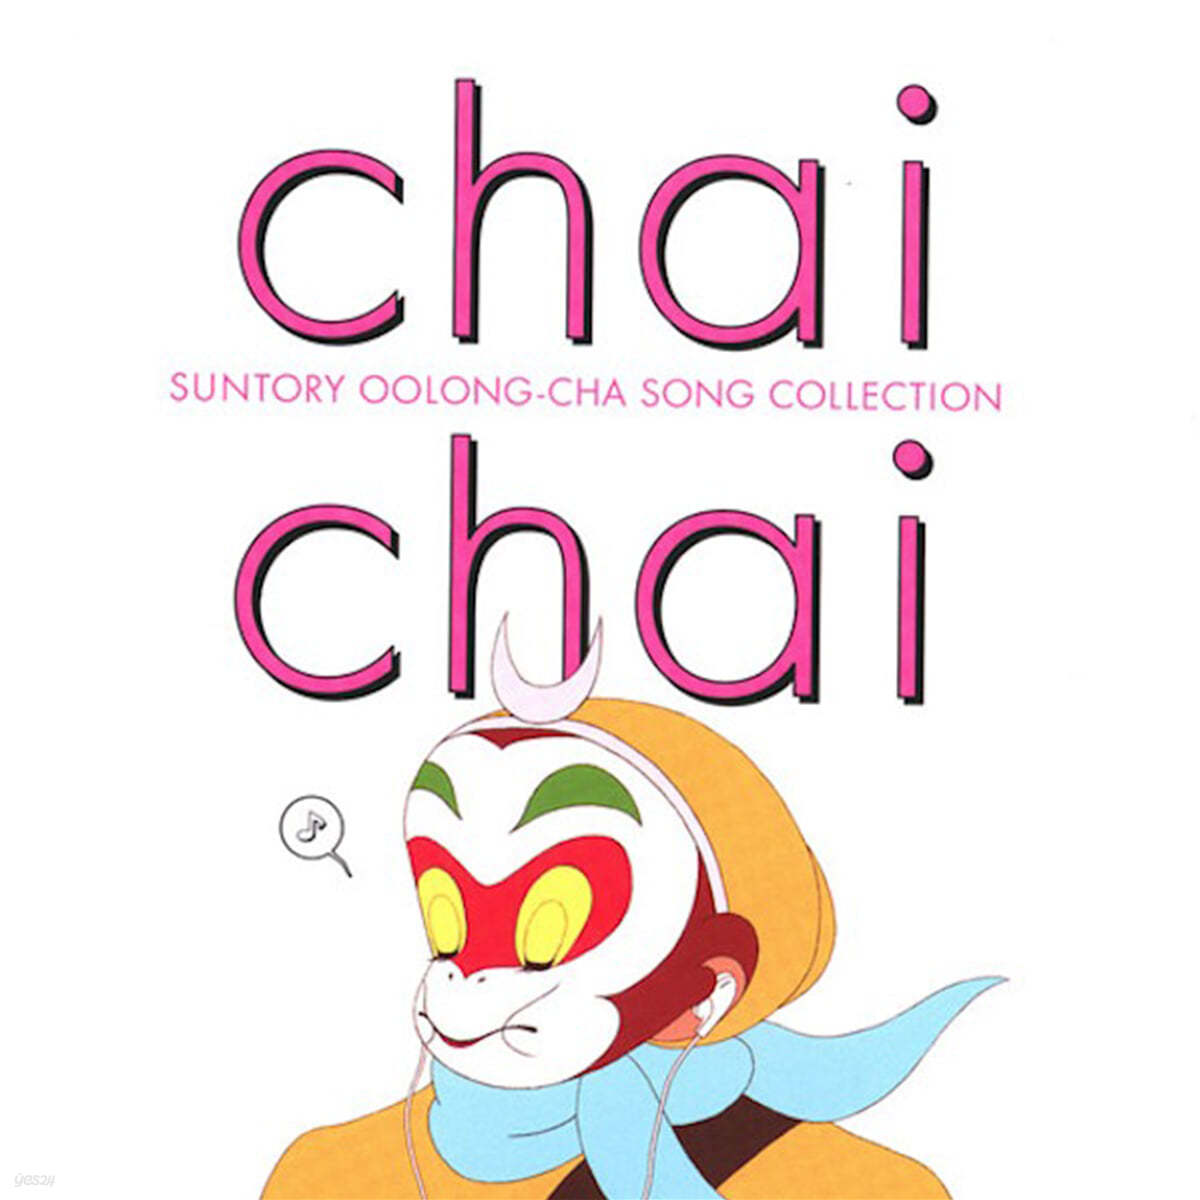 차이 차이 산토리 우롱차 송 컬렉션 (Chai Chai Suntory Oolong-Cha Song Collection OST) [2LP]